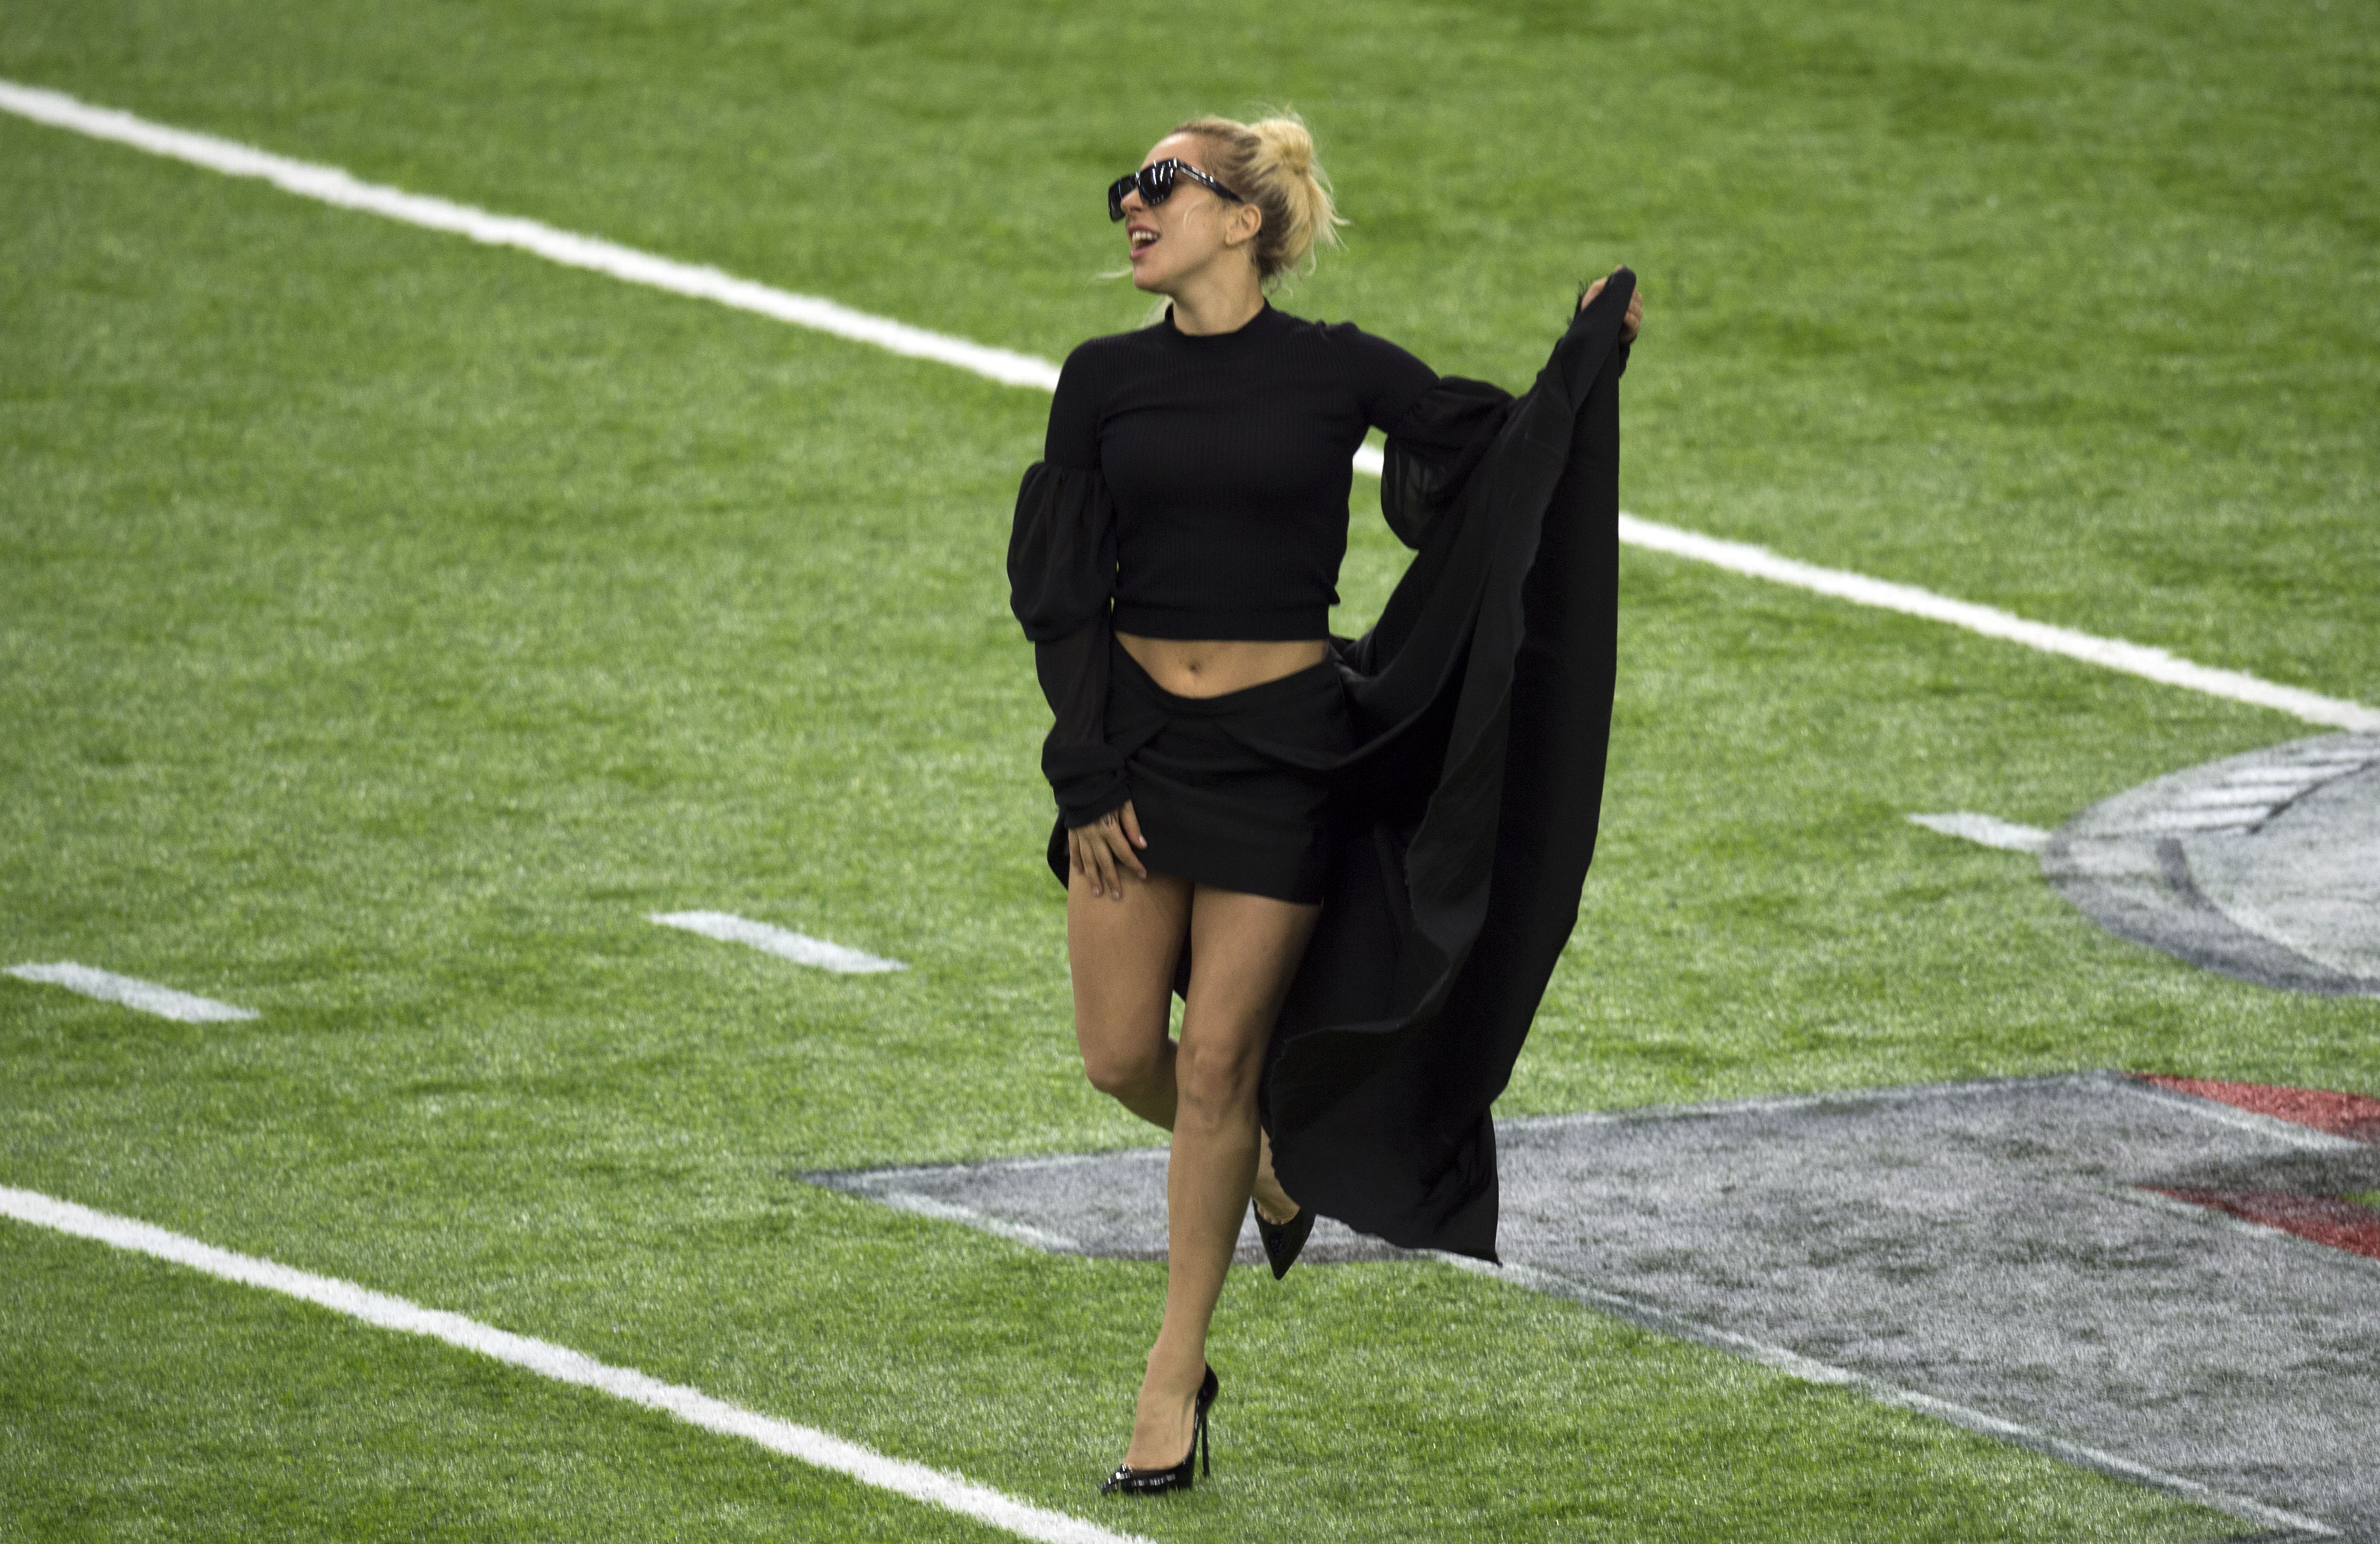 Antes del medio tiempo, este es el piconazo de Lady Gaga en el Super Bowl (FOTO)